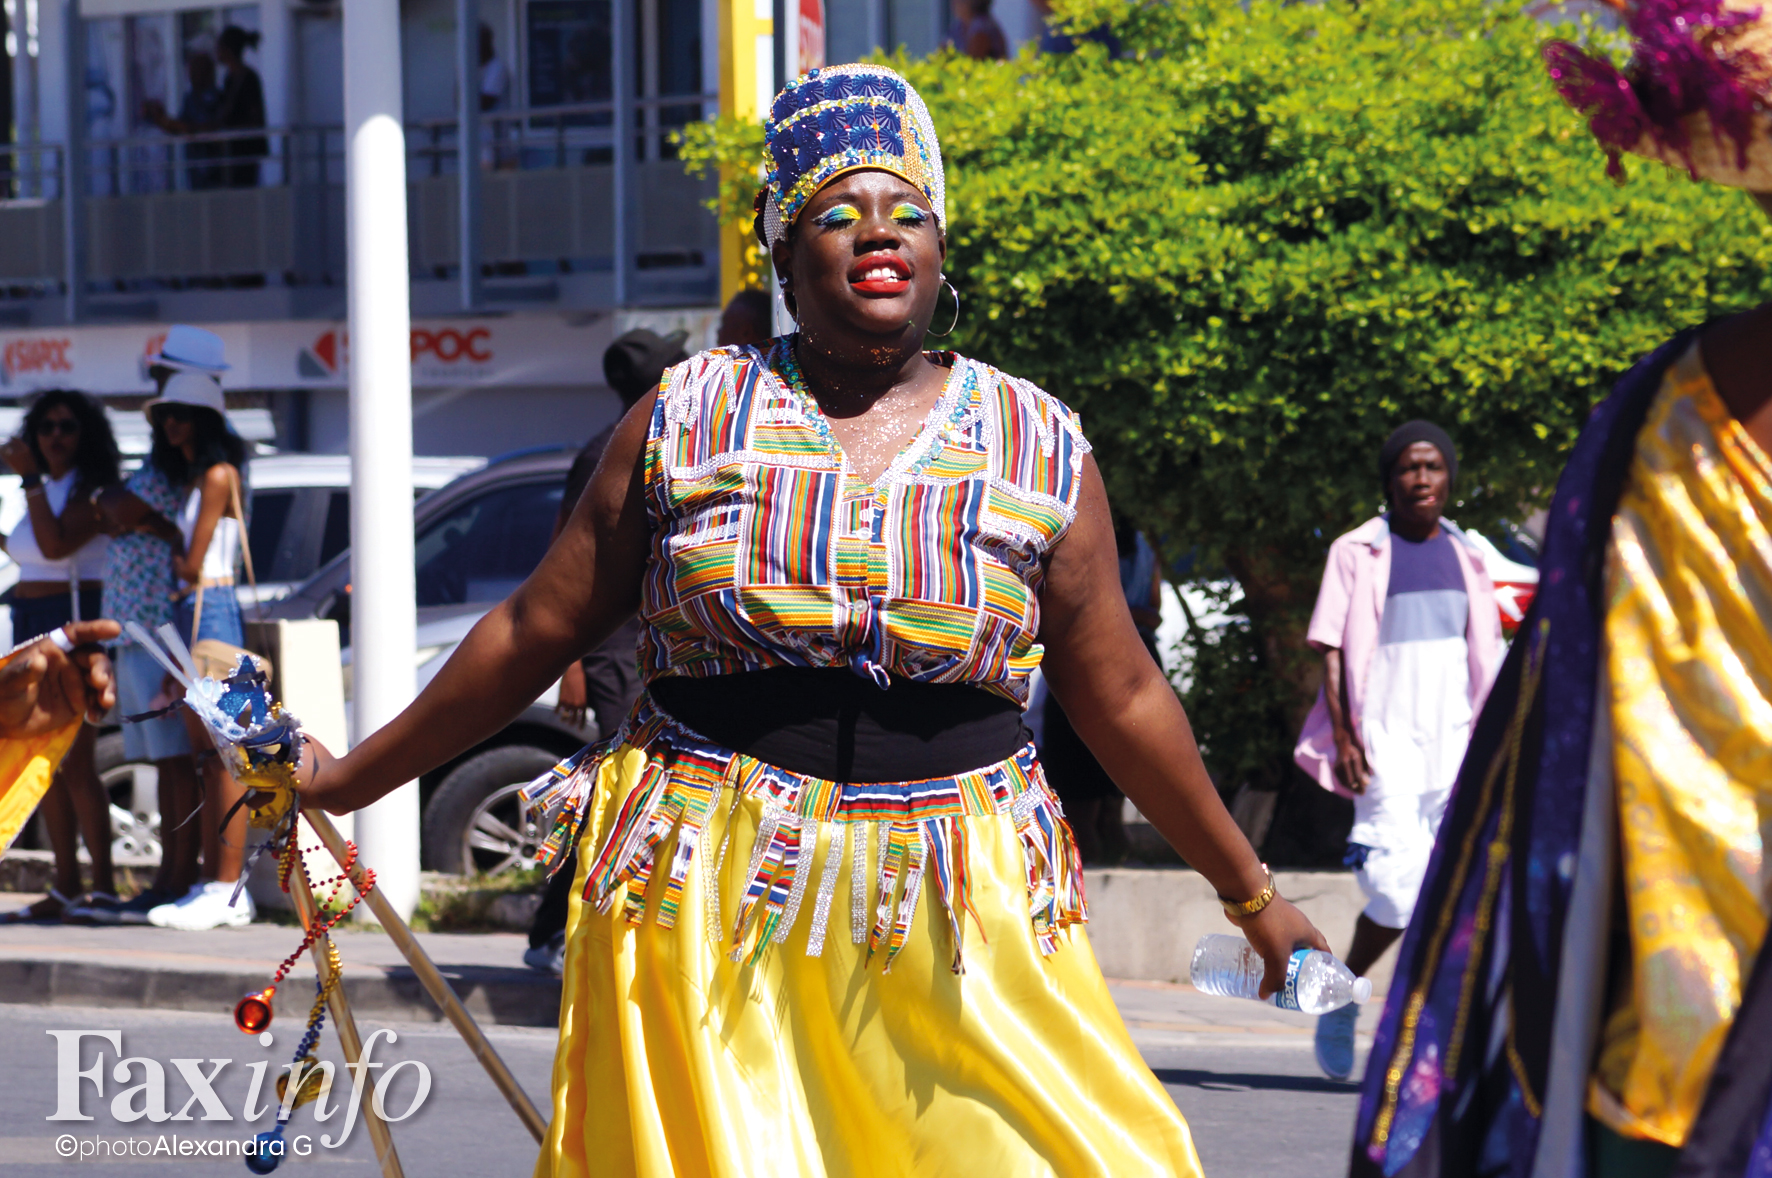 Carnaval: Fiesta de superhéroes - Selfpackaging Blog